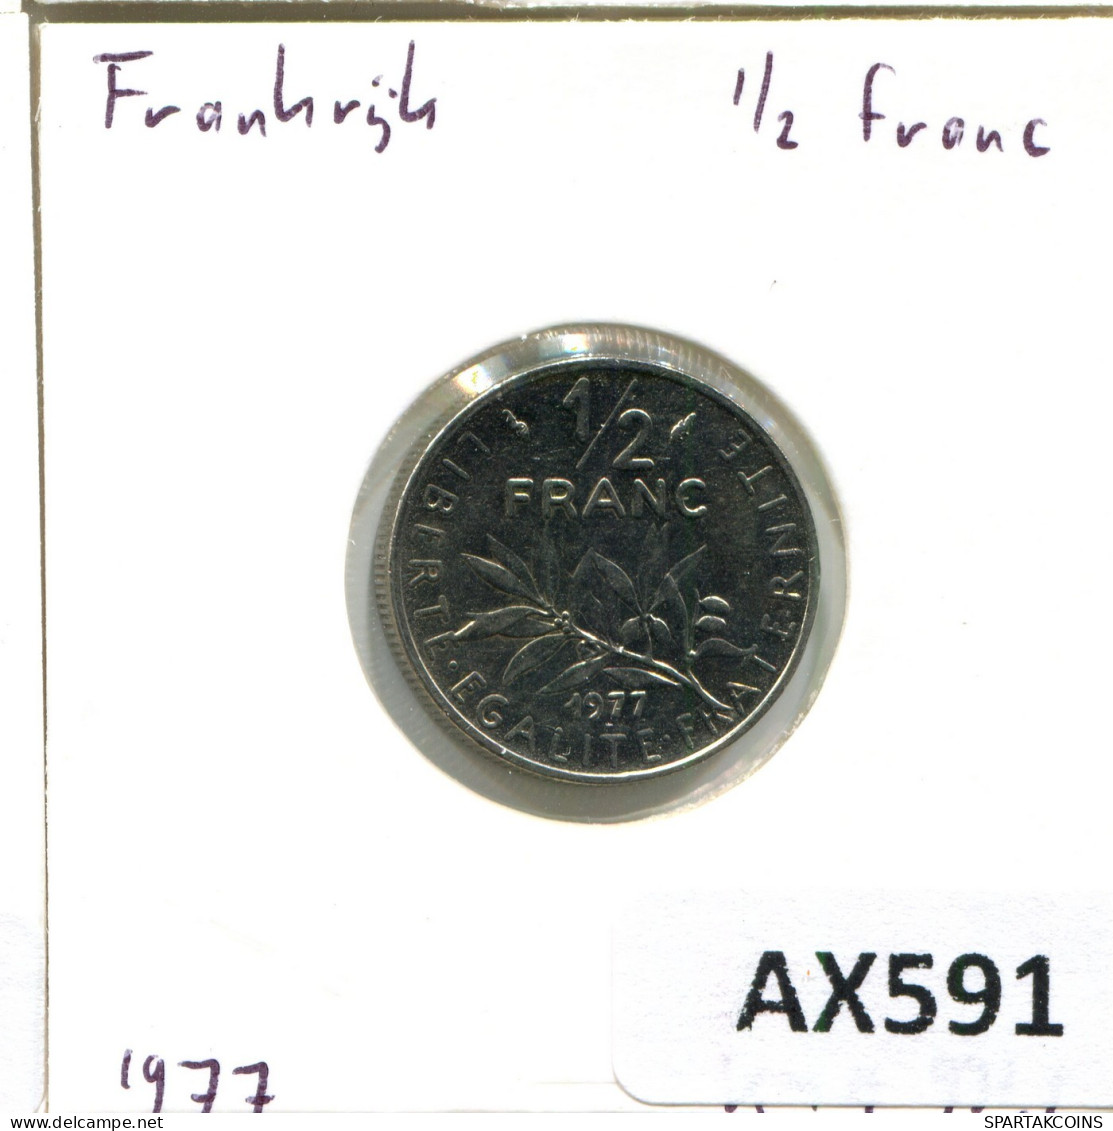 1/2 FRANC 1977 FRANCE Coin #AX591.U.A - 1/2 Franc